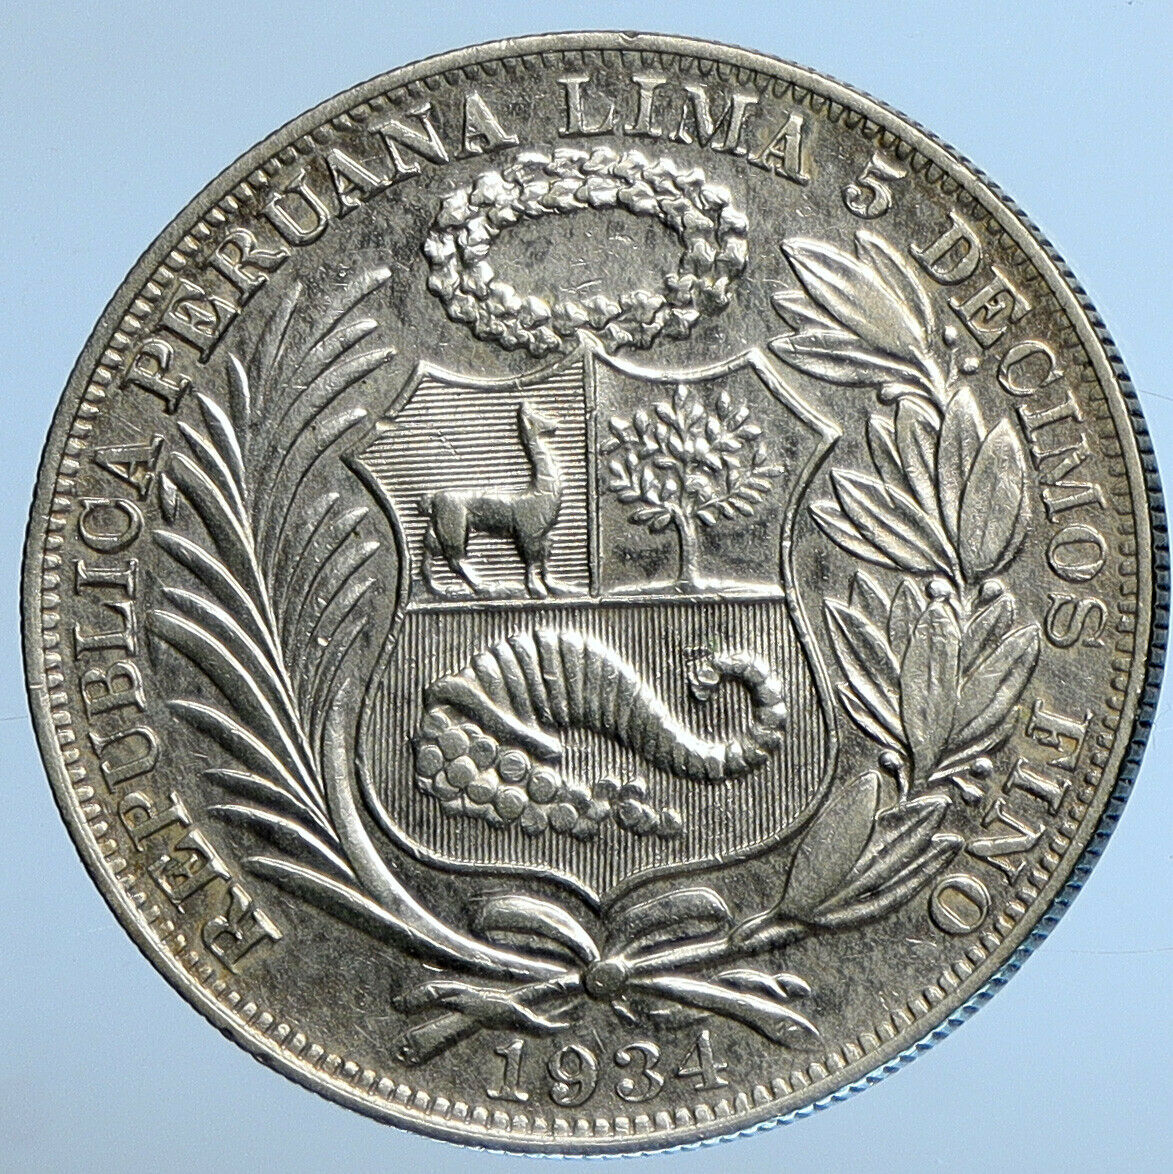 1934 PERU South America 1 SOL Antique BIG Original Silver Peruvian Coin i111236